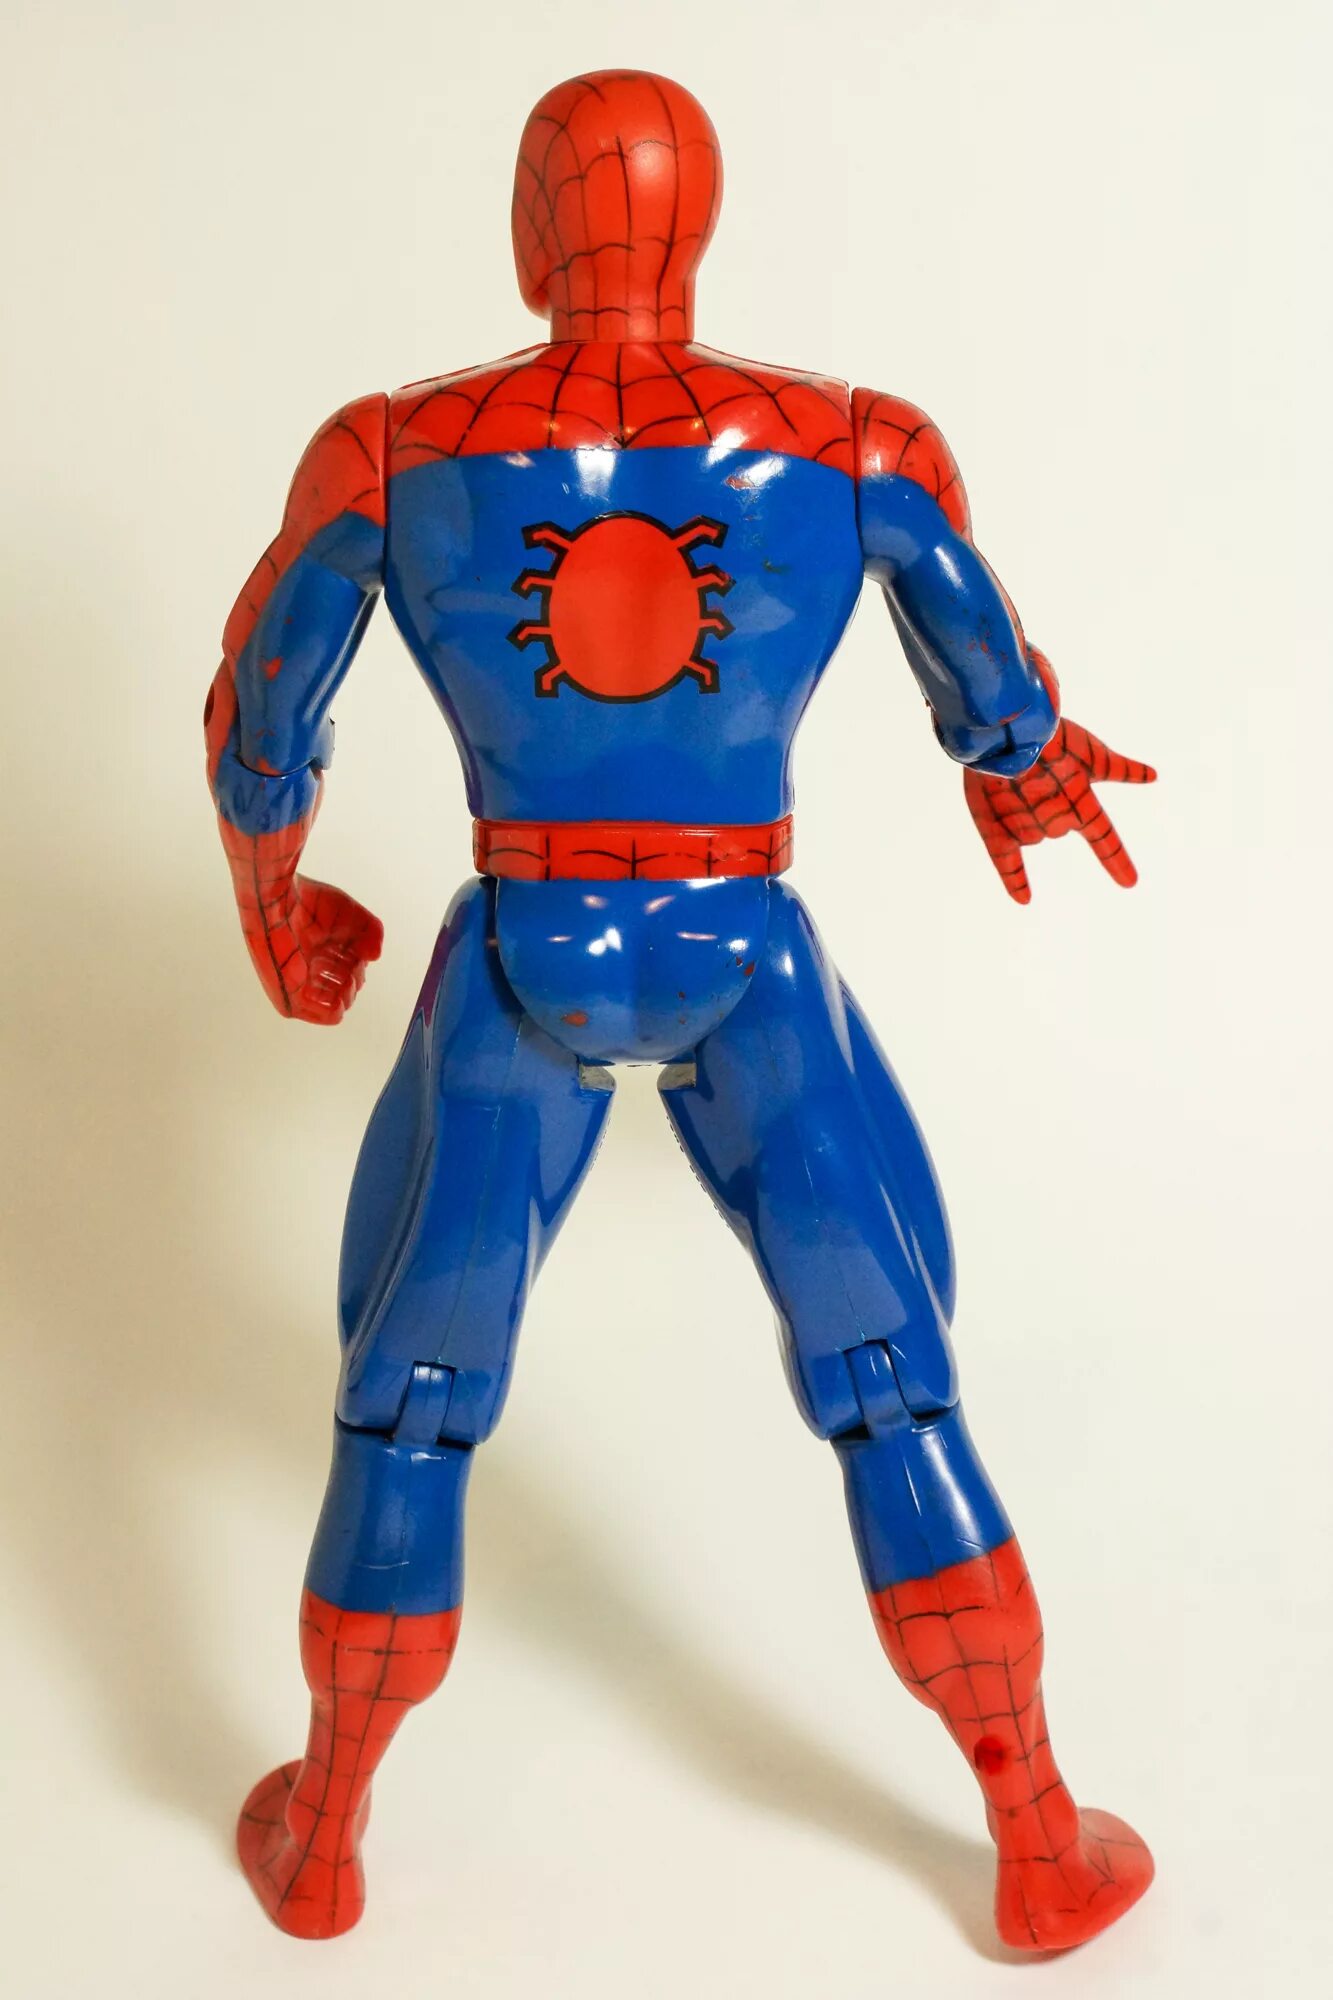 Фигурки TOYBIZ Spider-man 1994. Toy biz Spider man 1994. Фигурки TOYBIZ Spider-man 1999. Фигурки Spider man 1994 Toy biz. Toy biz